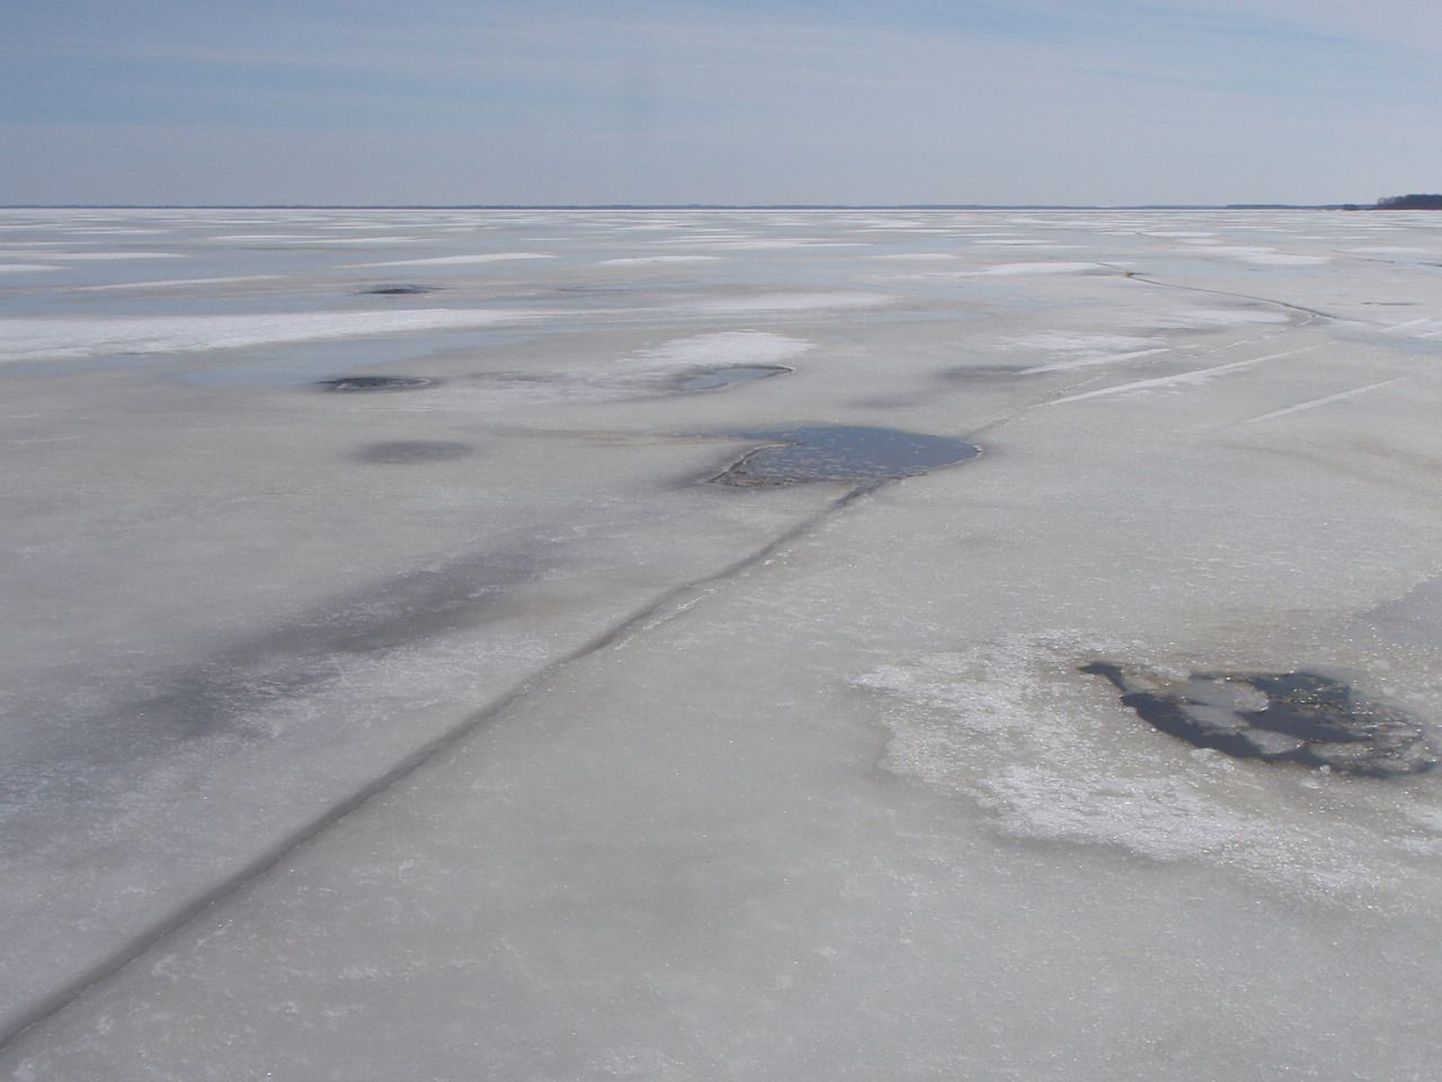 Jääolud Peipsil on muutunud autodele ohtlikuks. Jalgsi ja maastikusõidukitega tohib järvele esialgu veel minna.